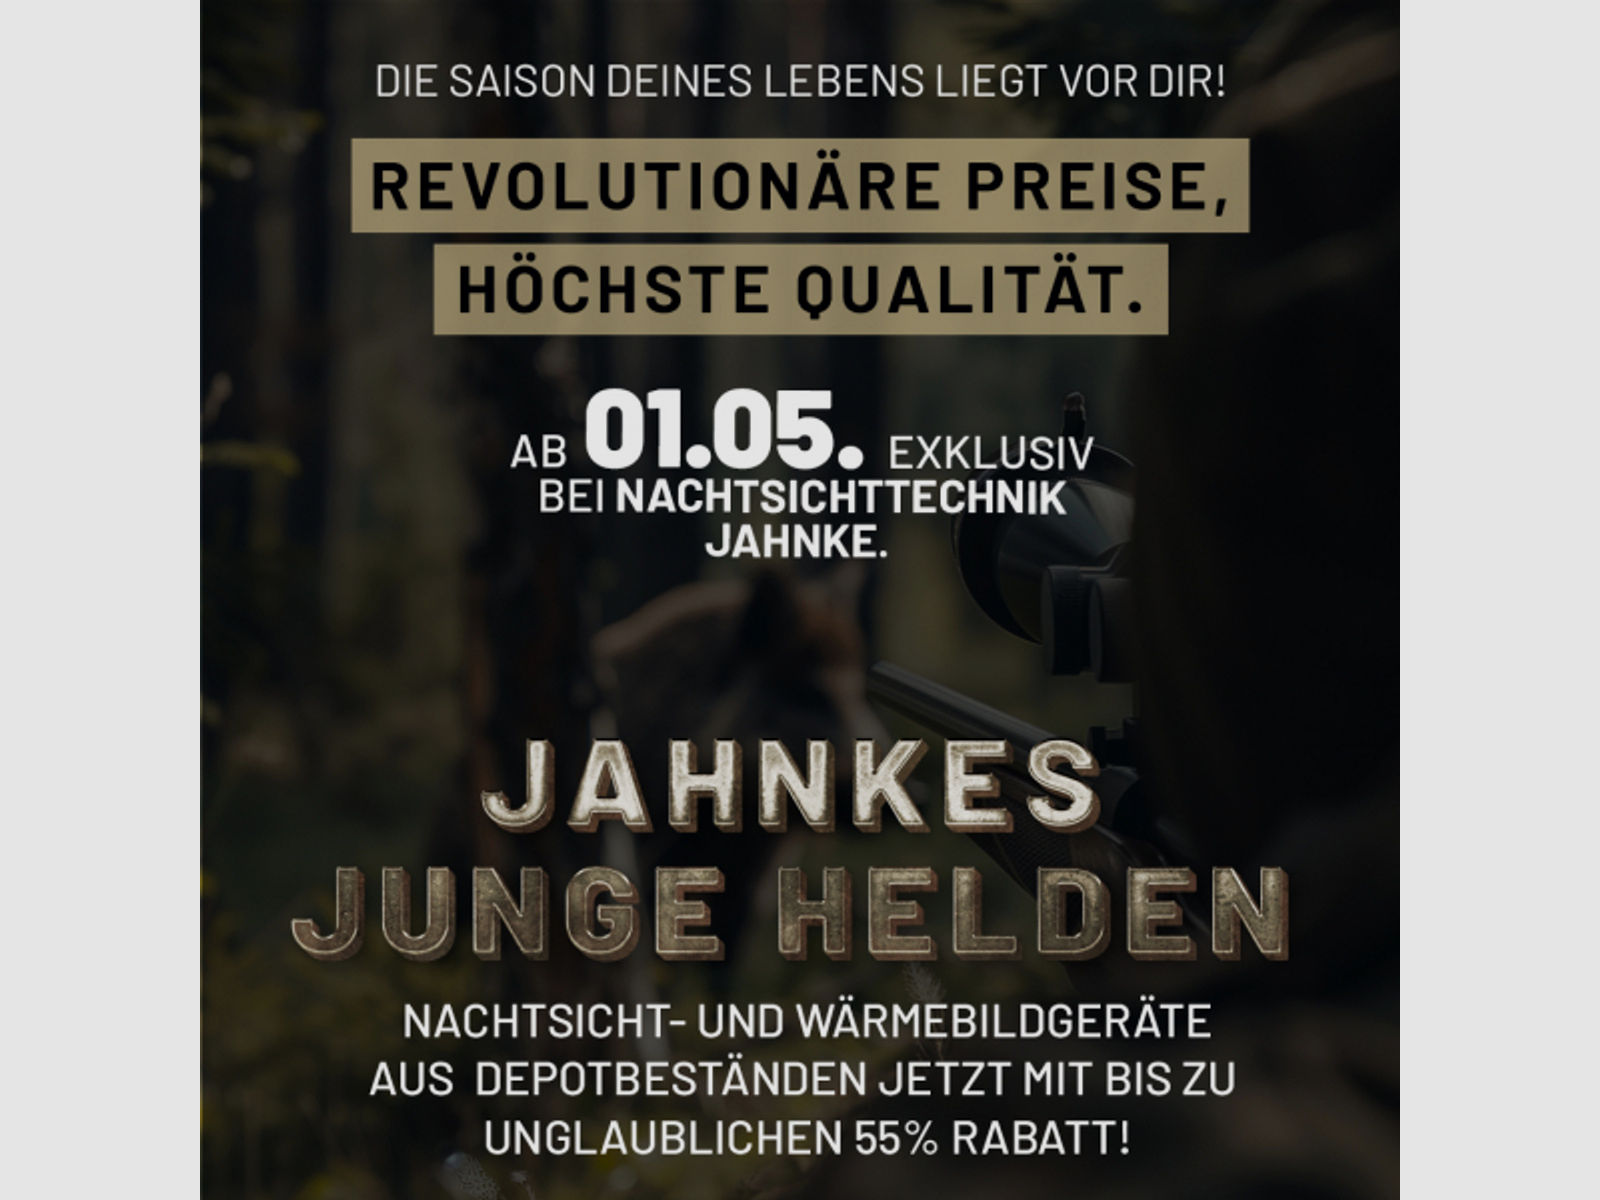 DJ-8 NSV 1×58 JJH aus der Jahnke Junge Helden" Aktion LK 3 S 1, Jahnke Premium